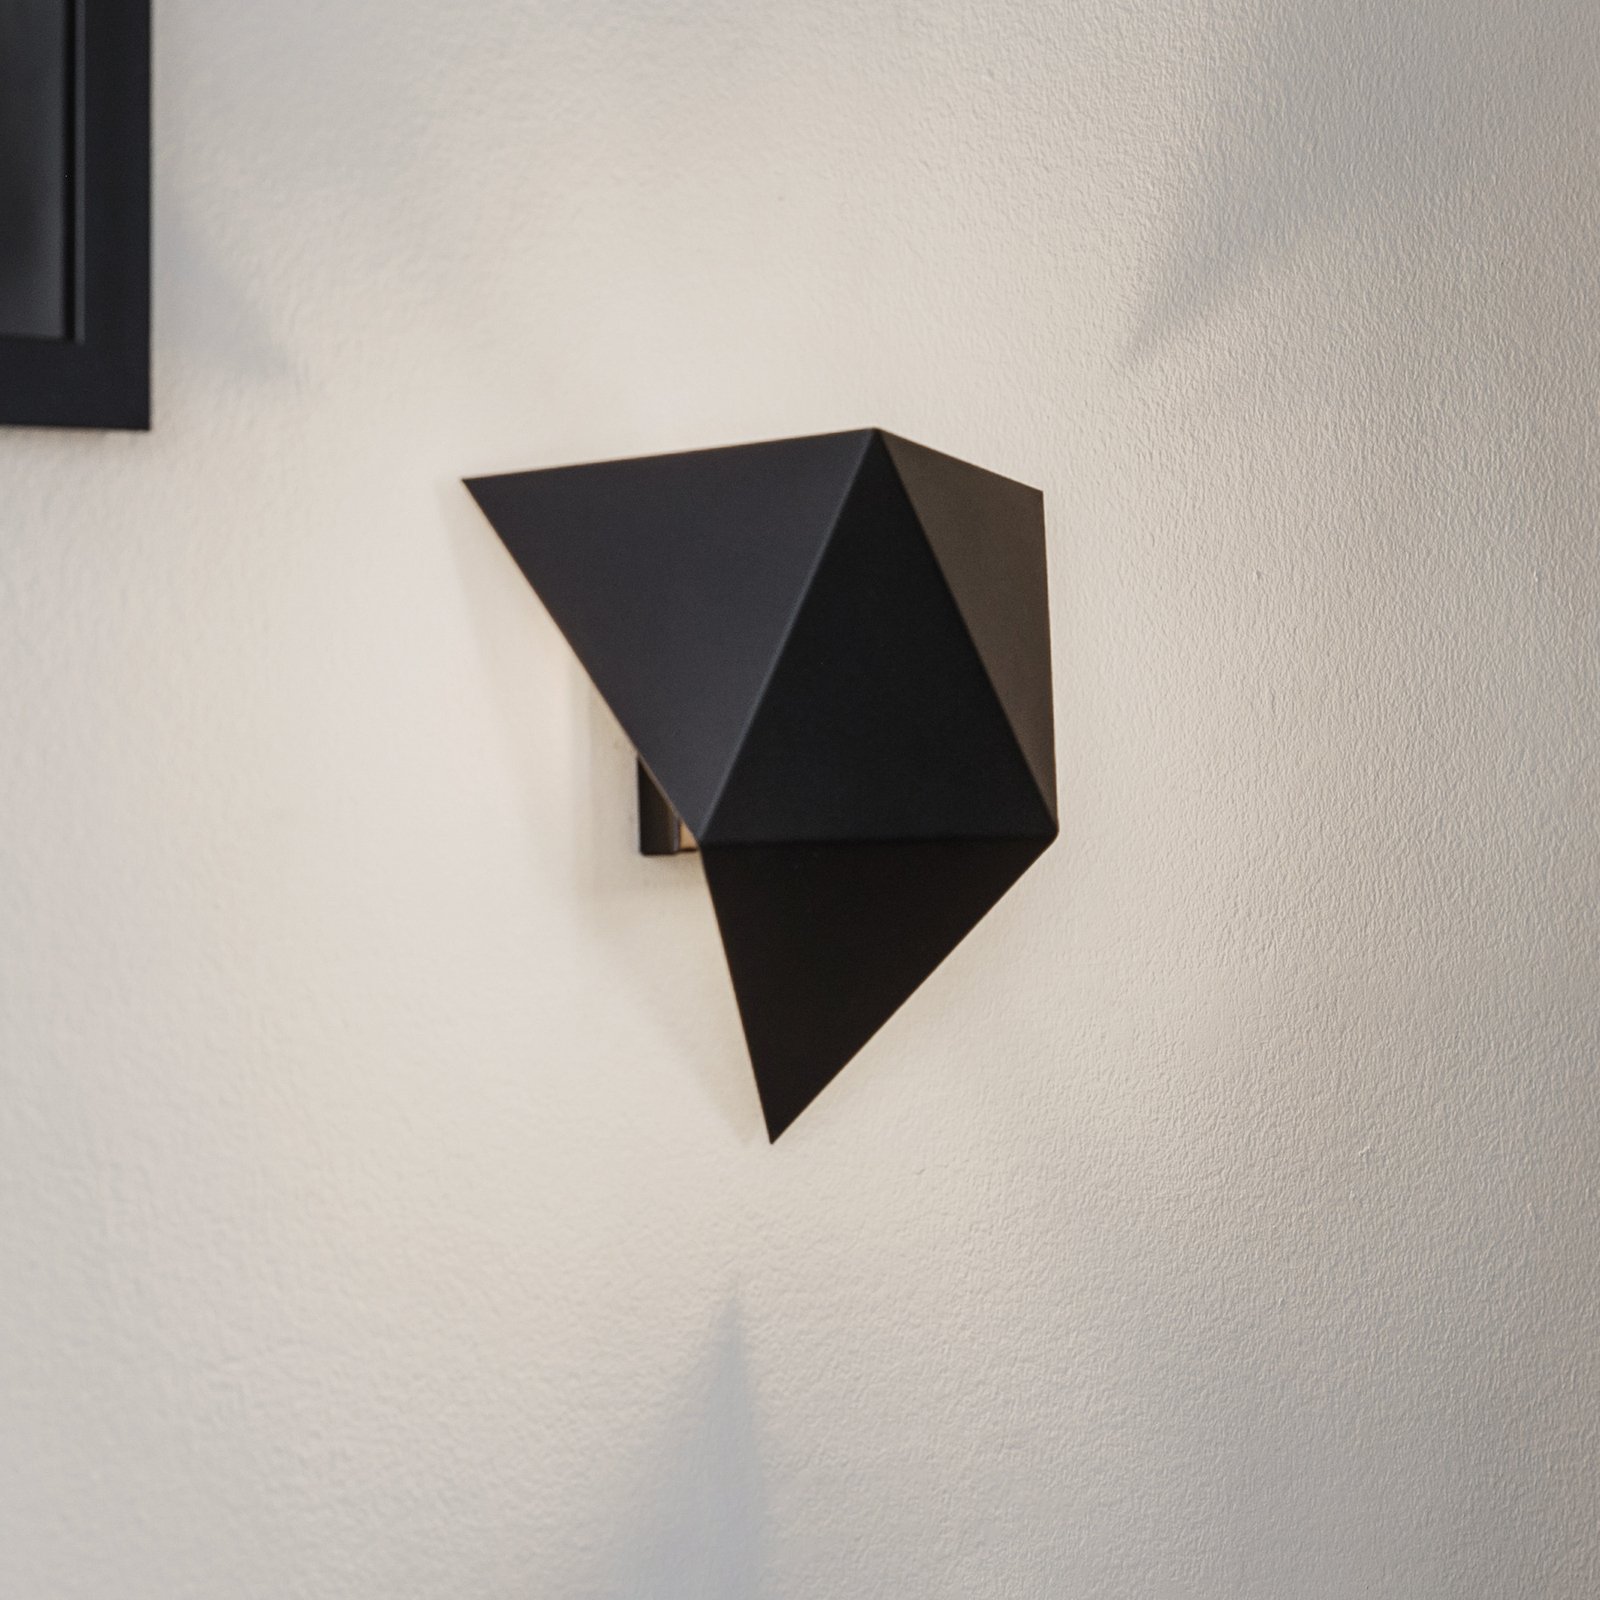 Wandlamp Shield in hoekige vorm, zwart